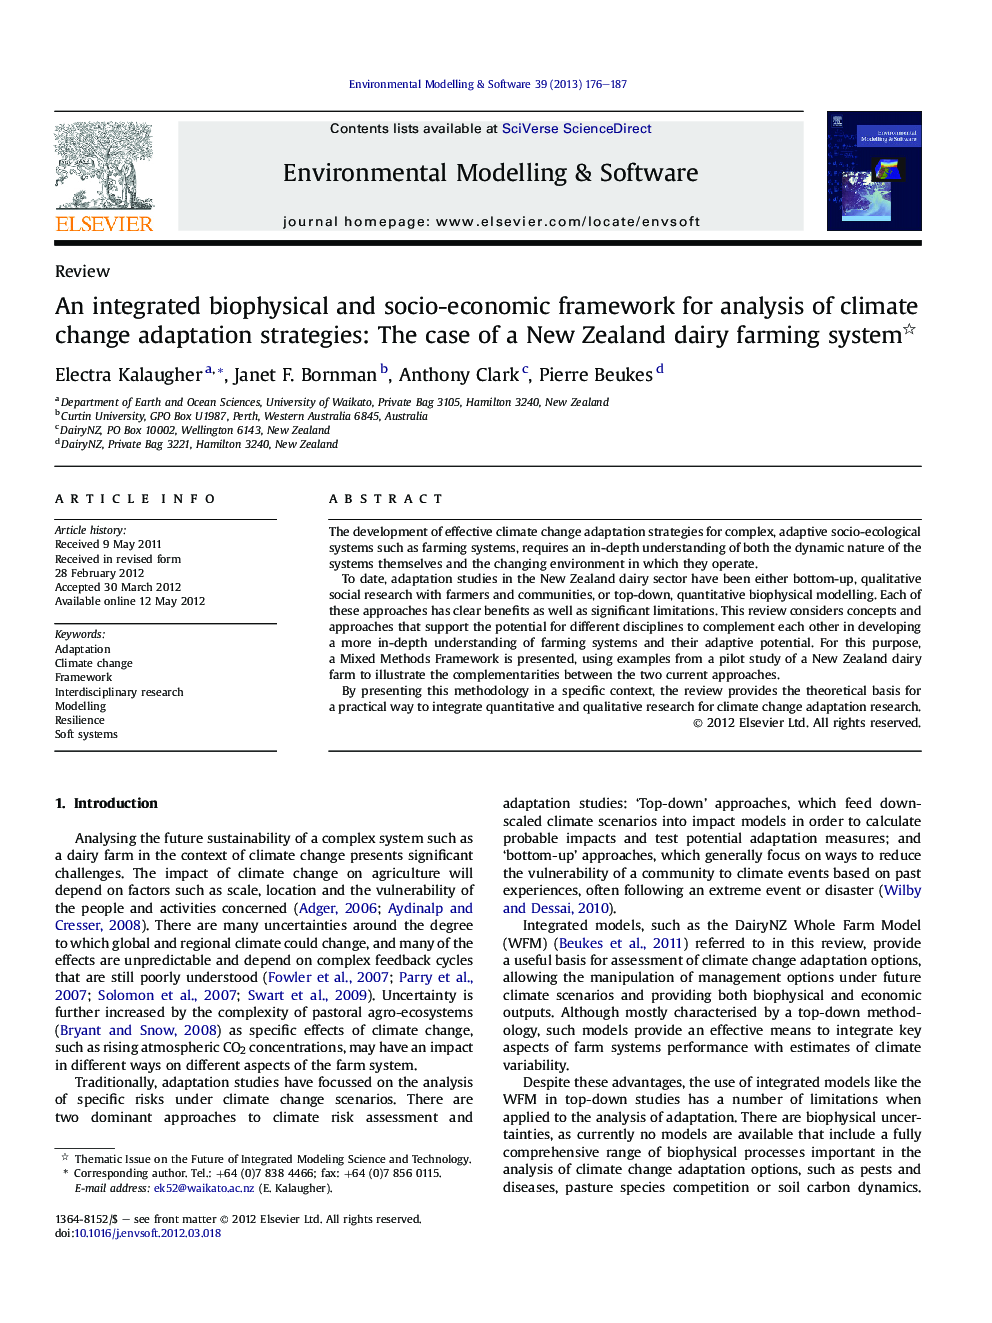 یک چارچوب بیوفیزیکی و اجتماعی-اقتصادی برای تجزیه و تحلیل استراتژی های انطباق تغییرات آب و هوایی: مورد یک سیستم کشاورزی مالداری نیوزیلند 